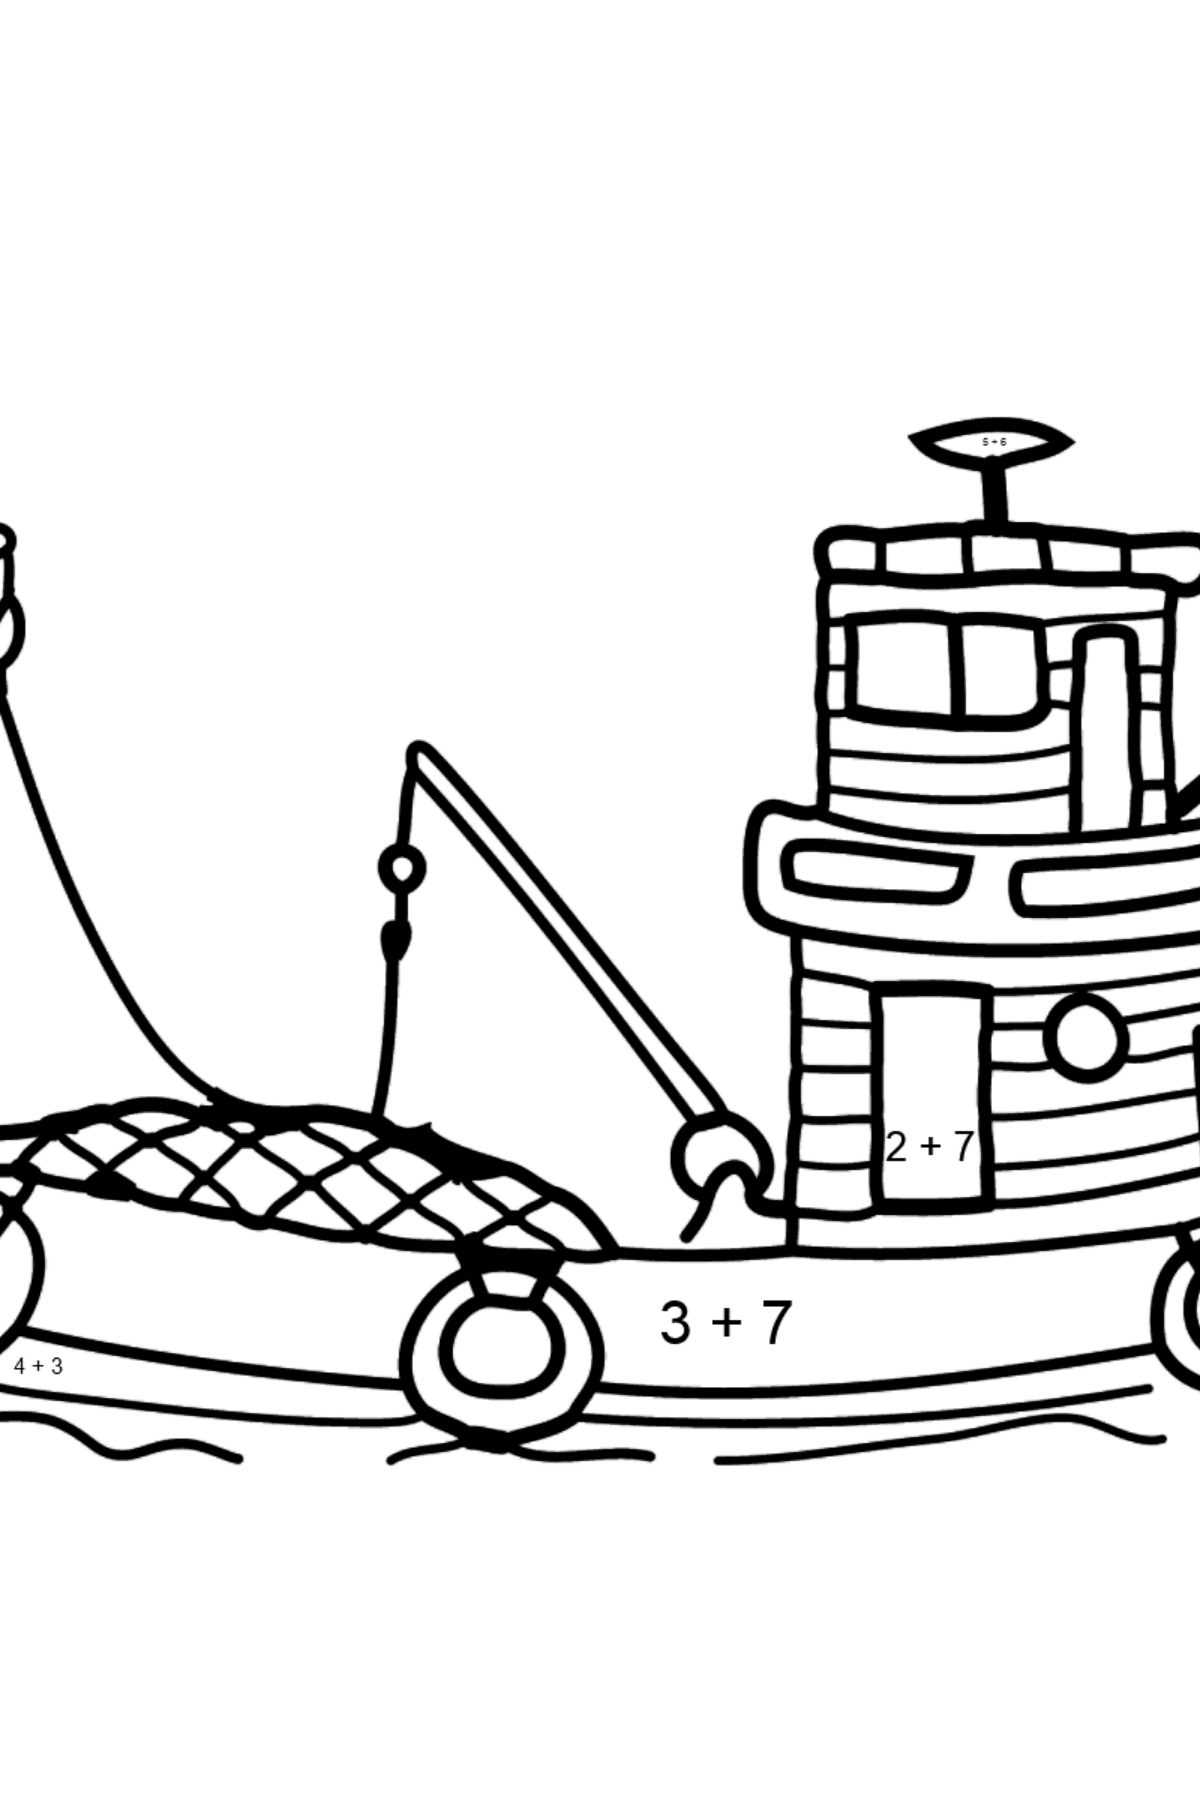 Ausmalbild - Ein Fischerboot - Mathe Ausmalbilder - Addition für Kinder